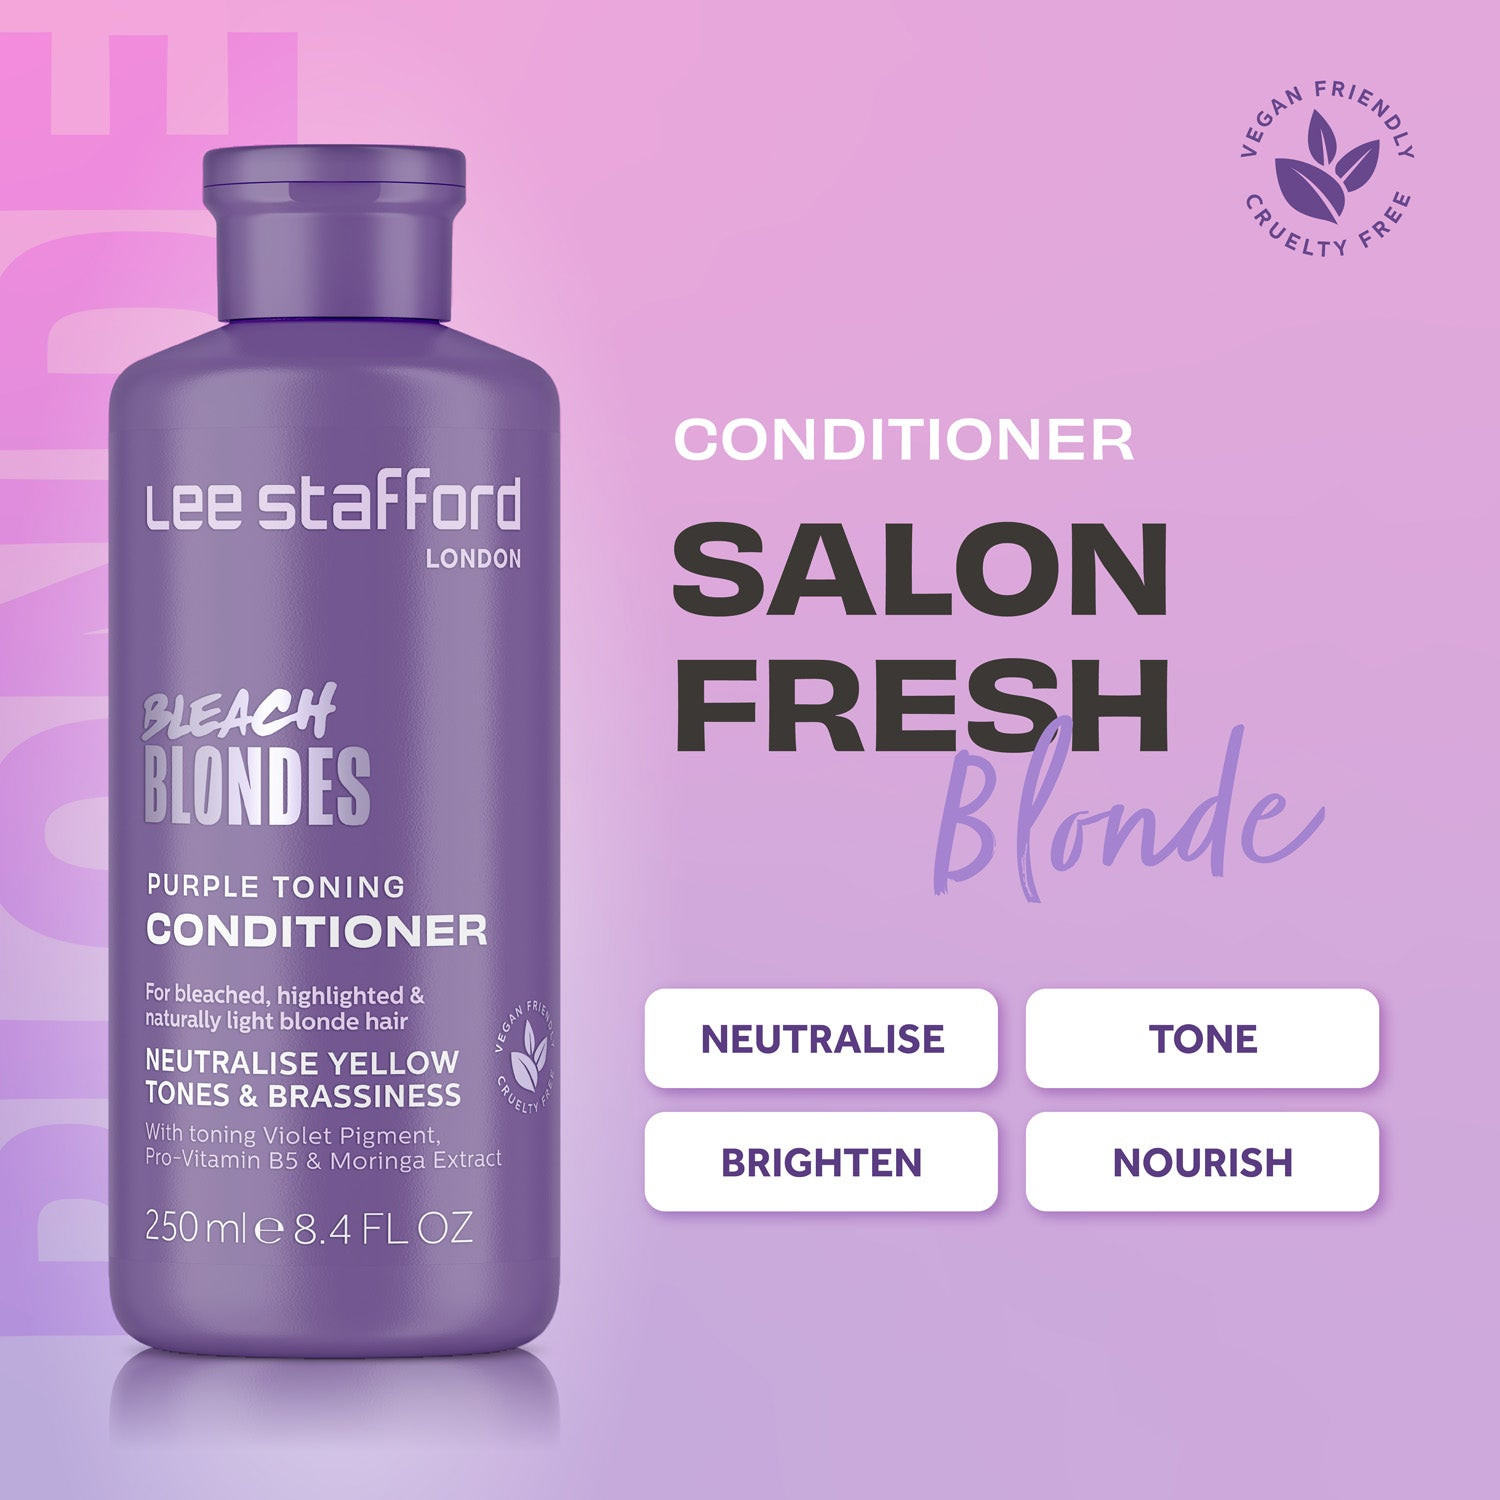 Тонуючий фіолетовий кондиціонер для освітленого волосся Lee Stafford Bleach Blondes Purple Toning Conditioner